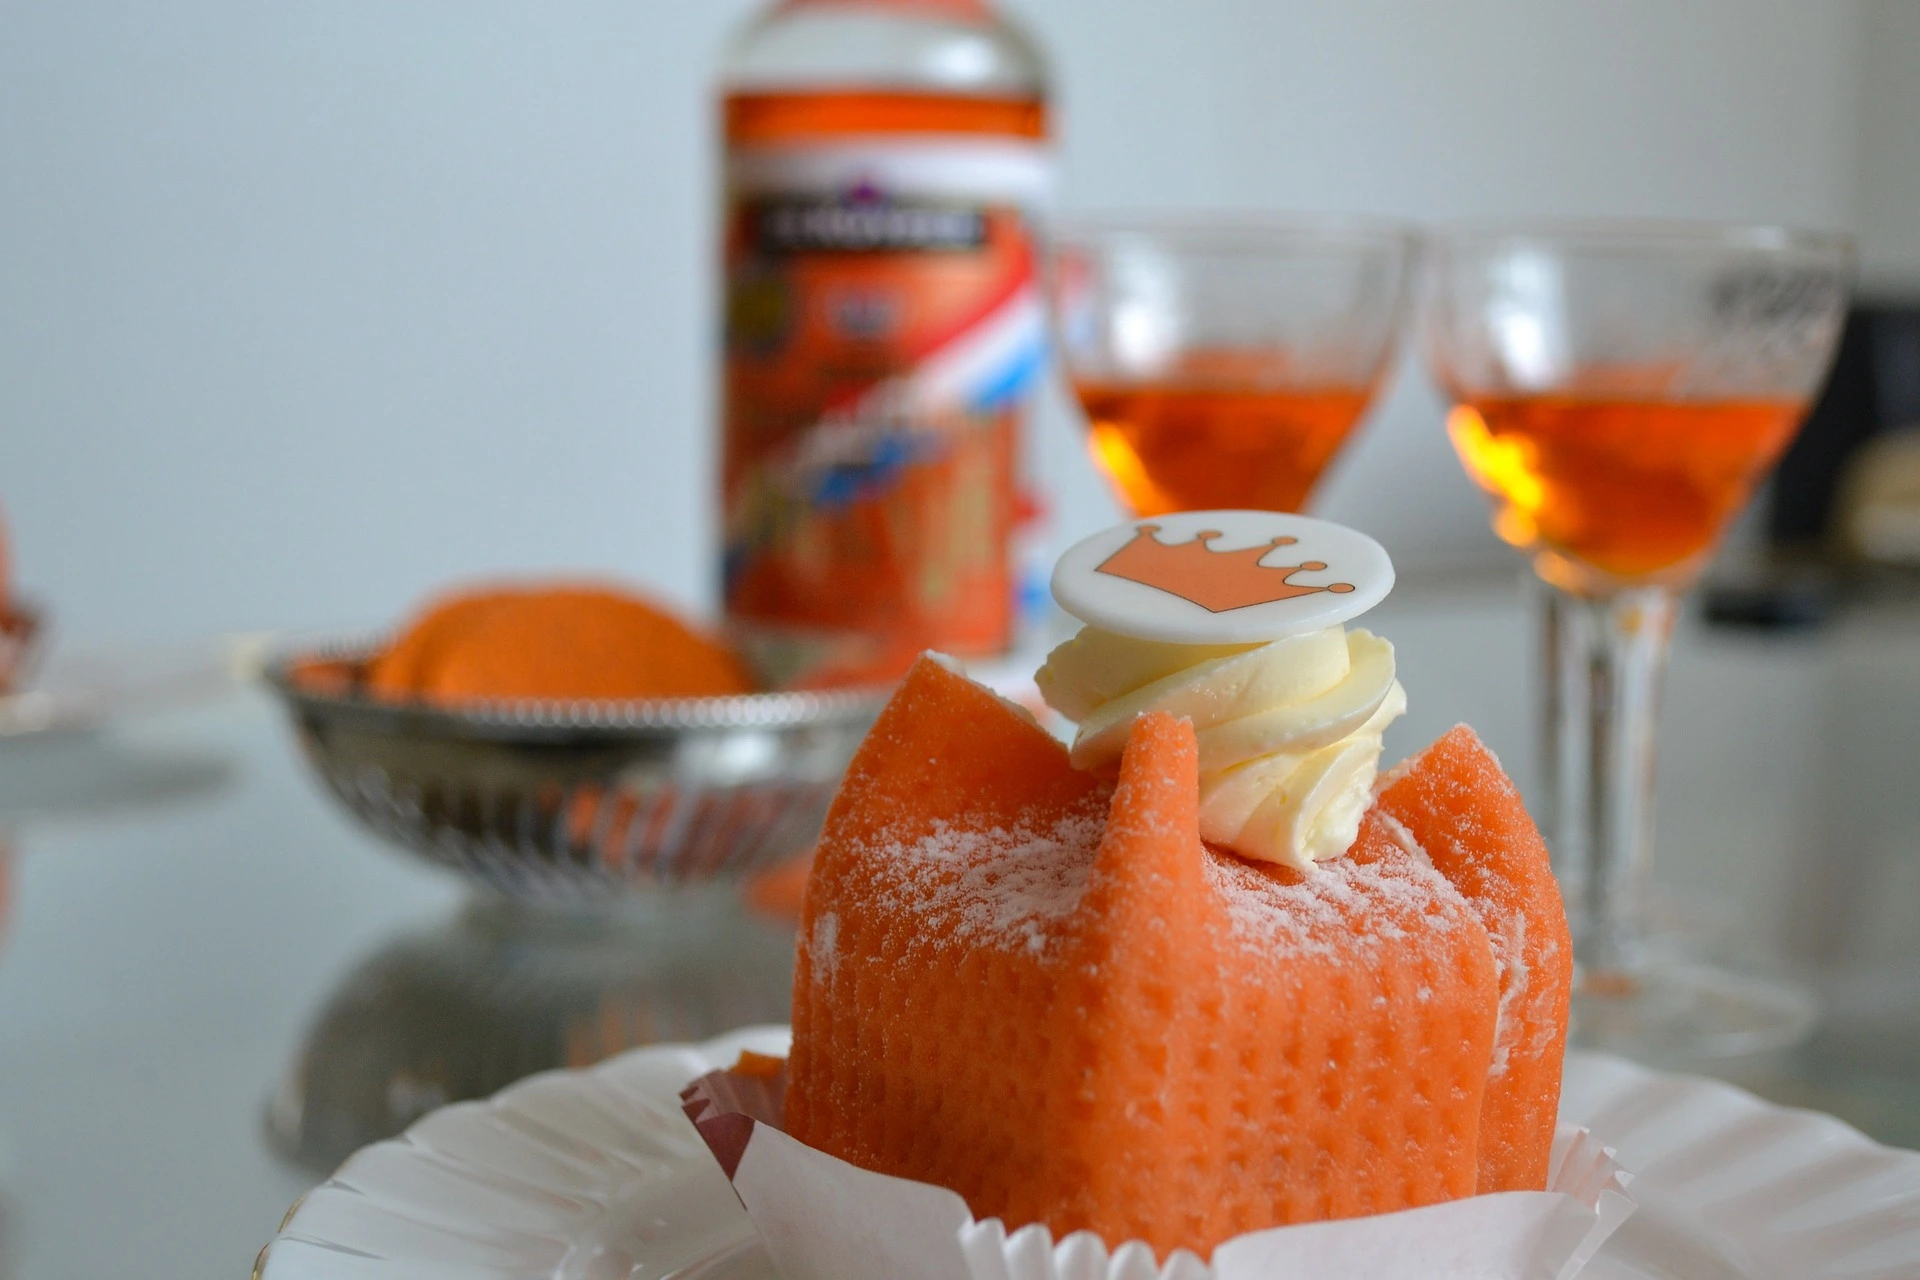 Dutch Kingsday treats in orange